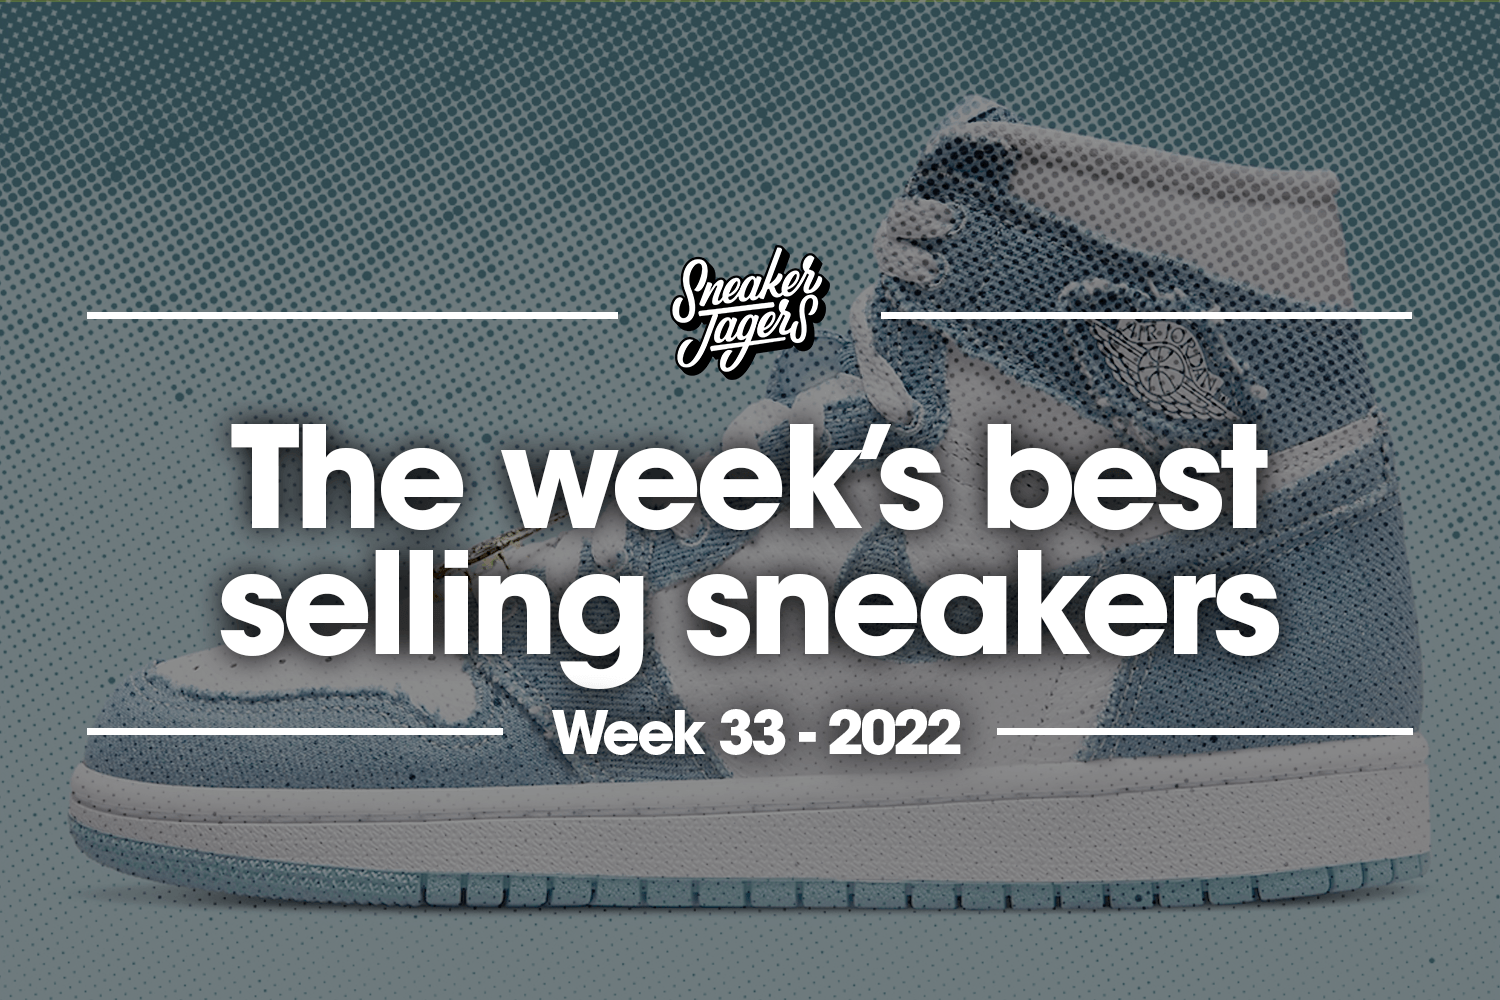 The 5 best-selling sneakers of week 33